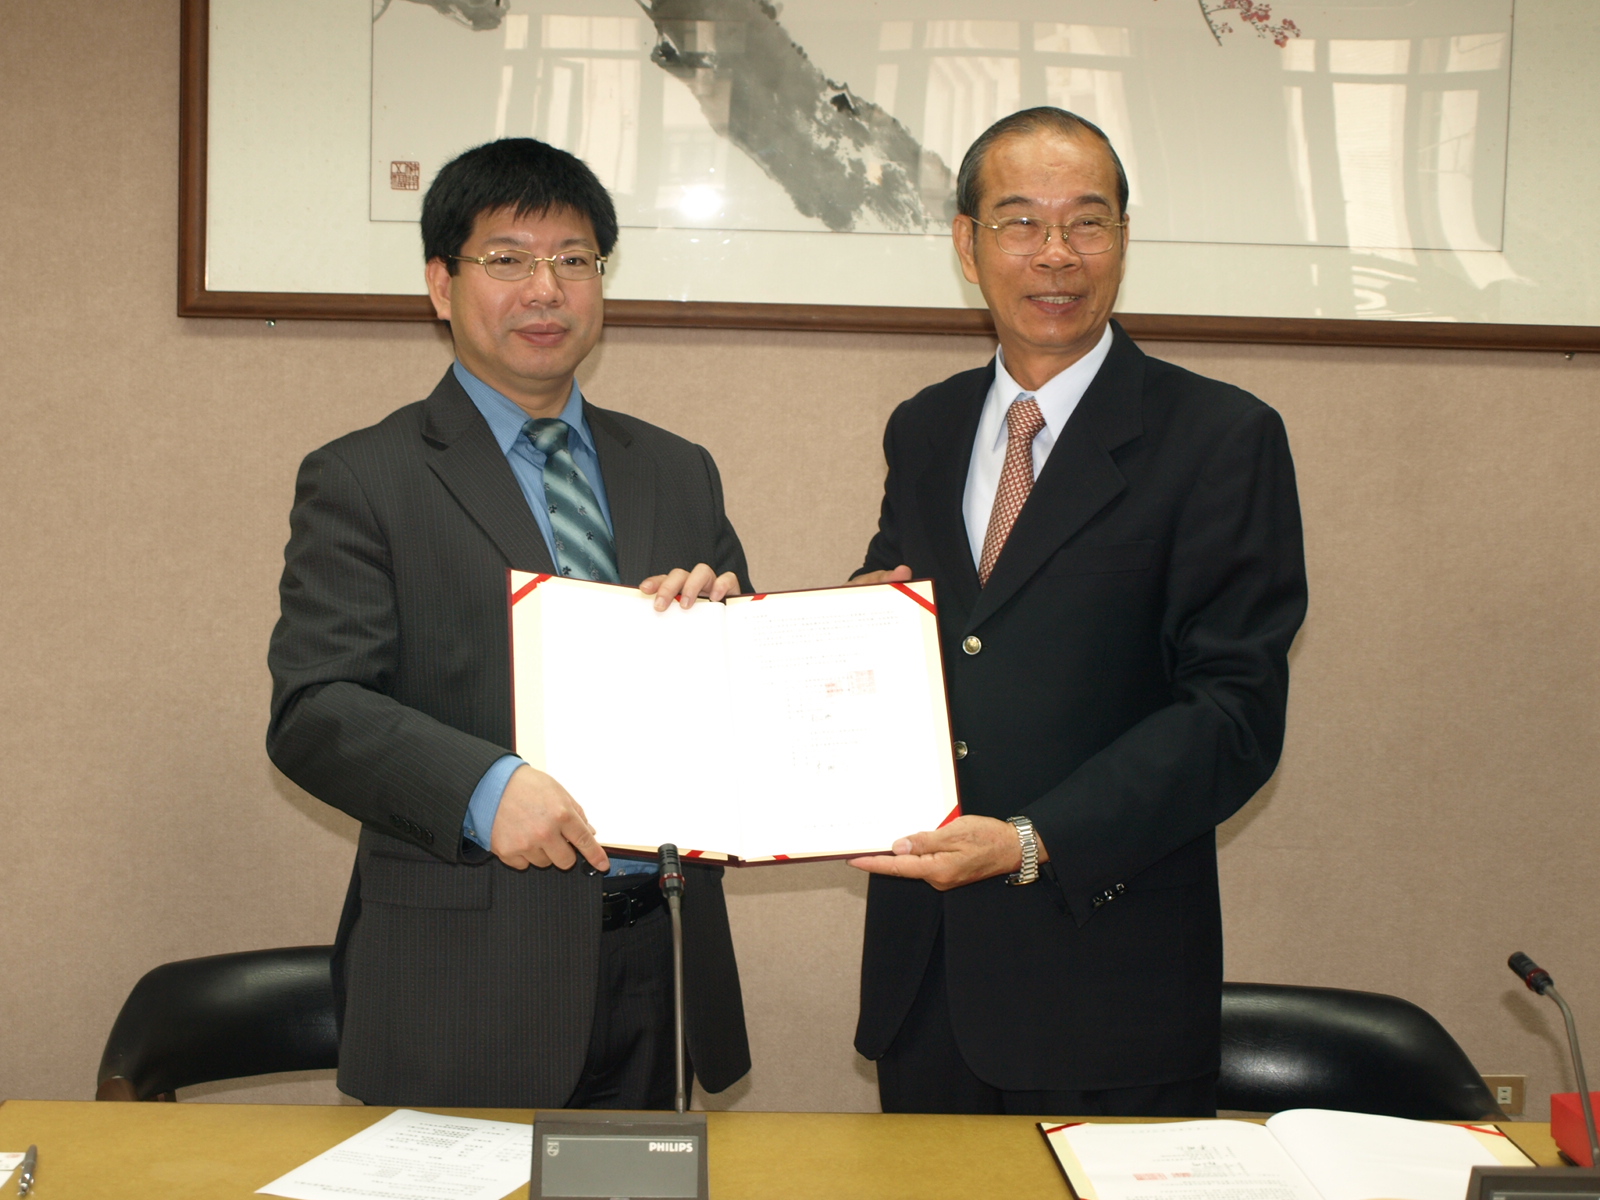 李明仁校長(右)與郭文琦執行副總(左)代表簽訂無償授權合約